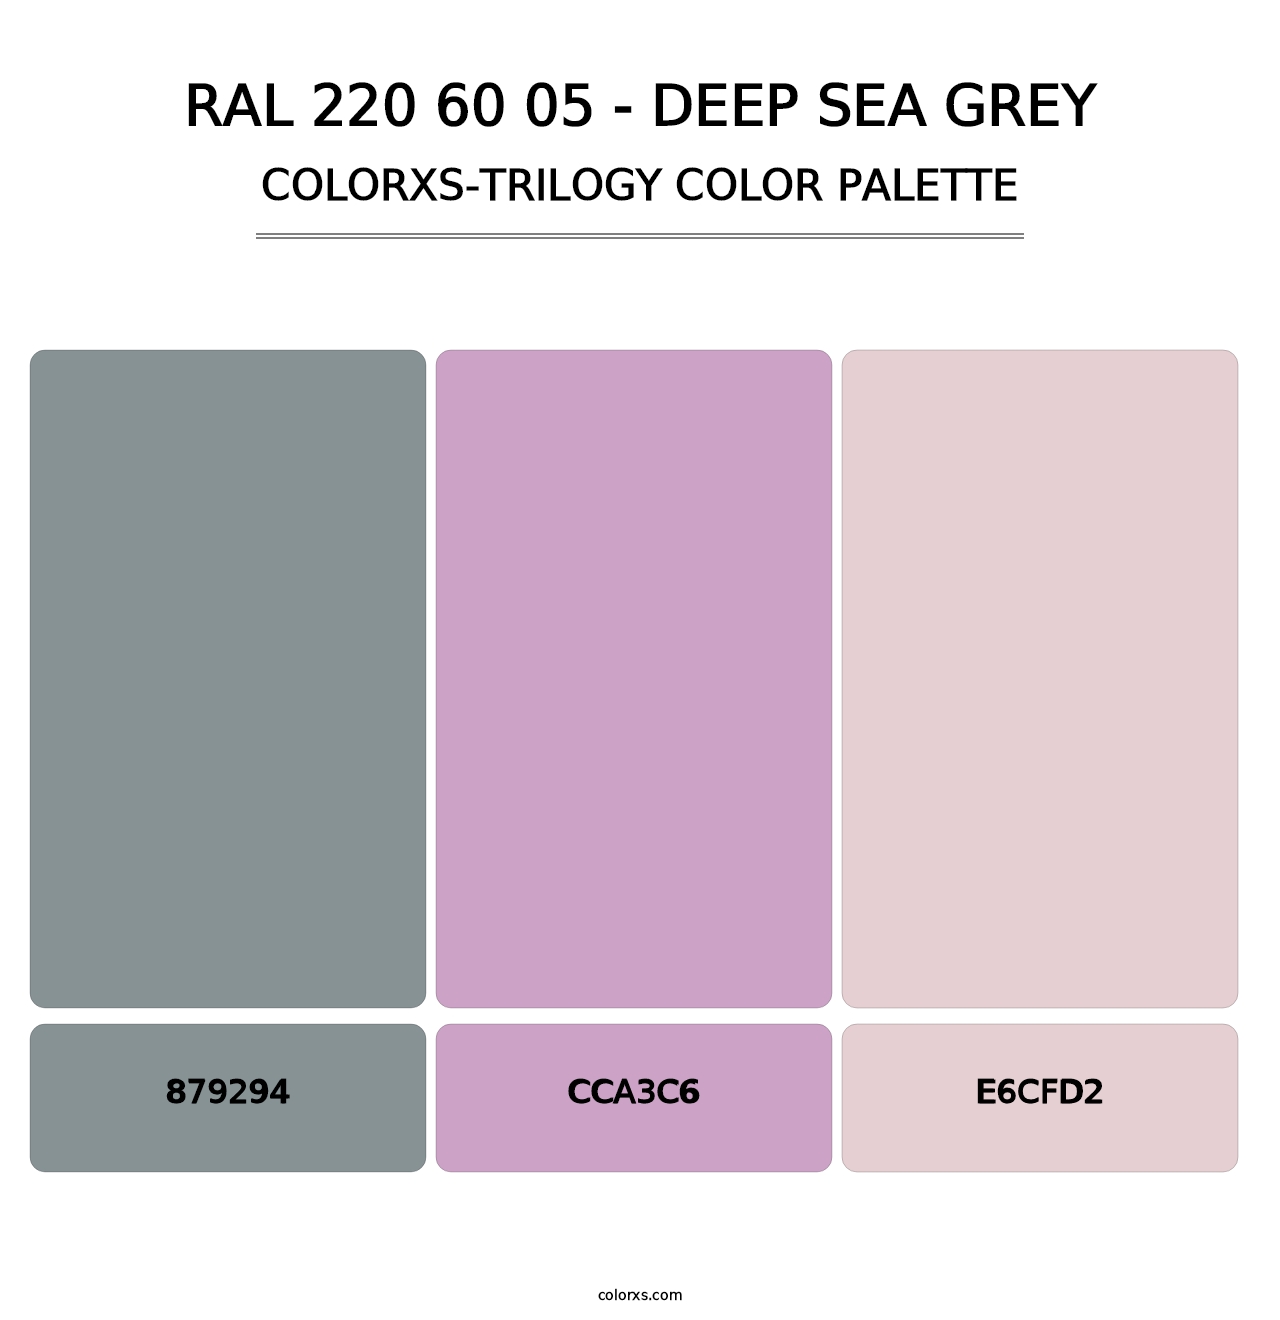 RAL 220 60 05 - Deep Sea Grey - Colorxs Trilogy Palette